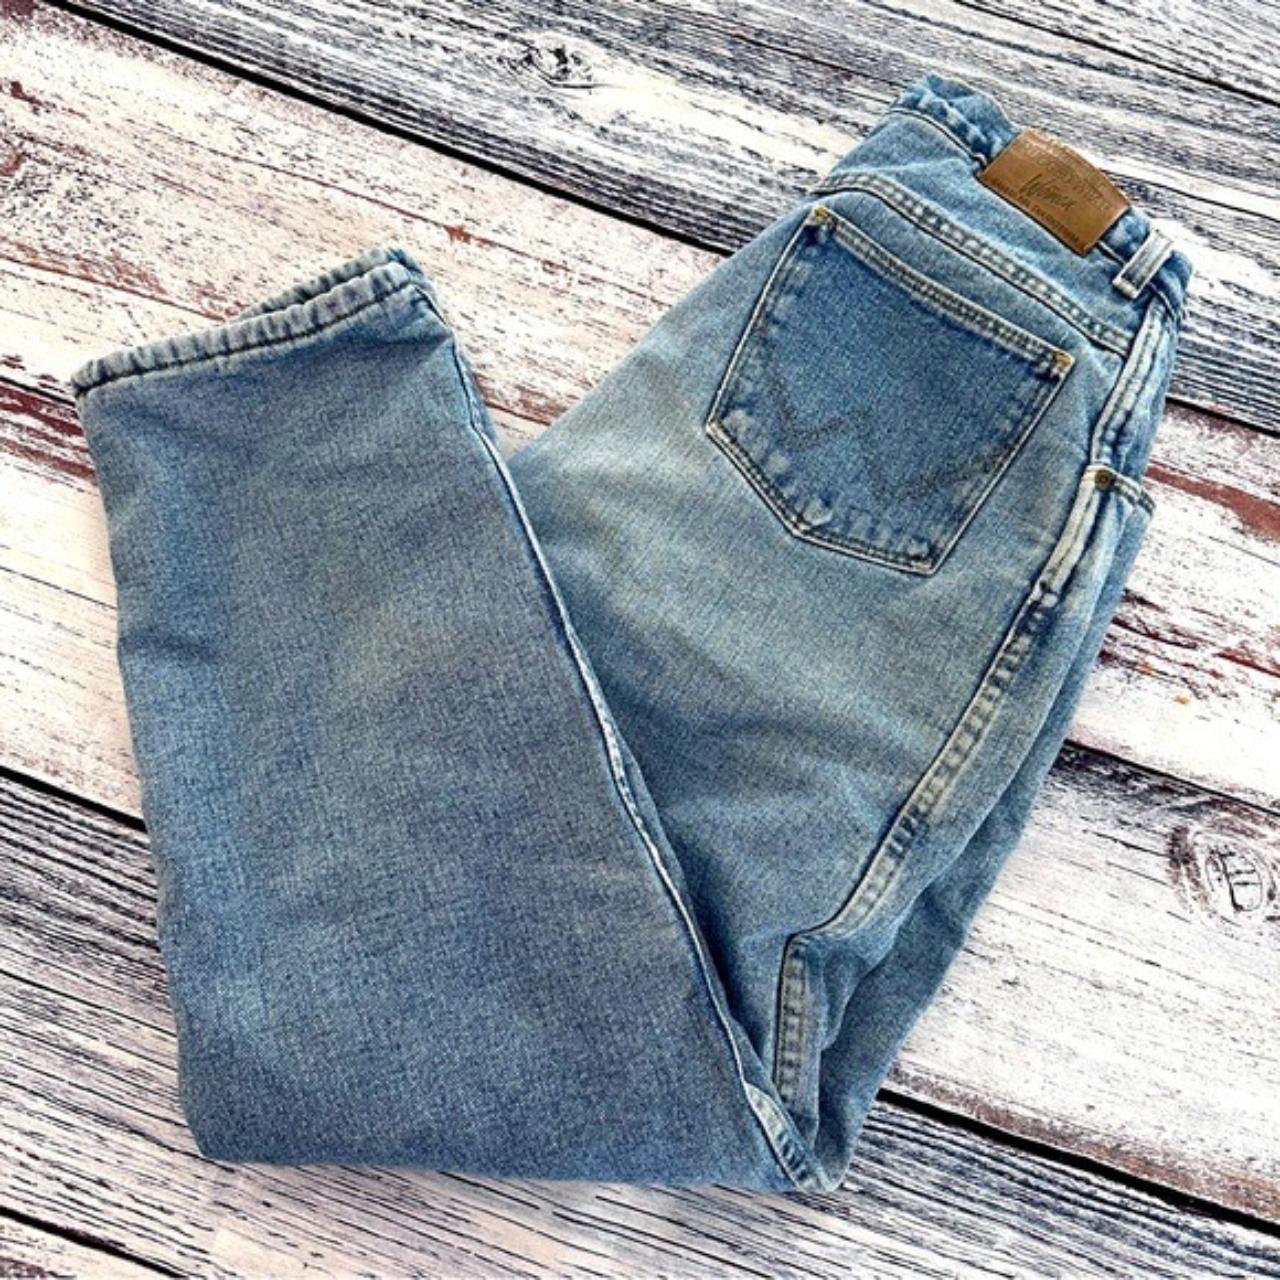 Vintage Wrangler Fleece Lined Jeans Women’s Size... - Depop